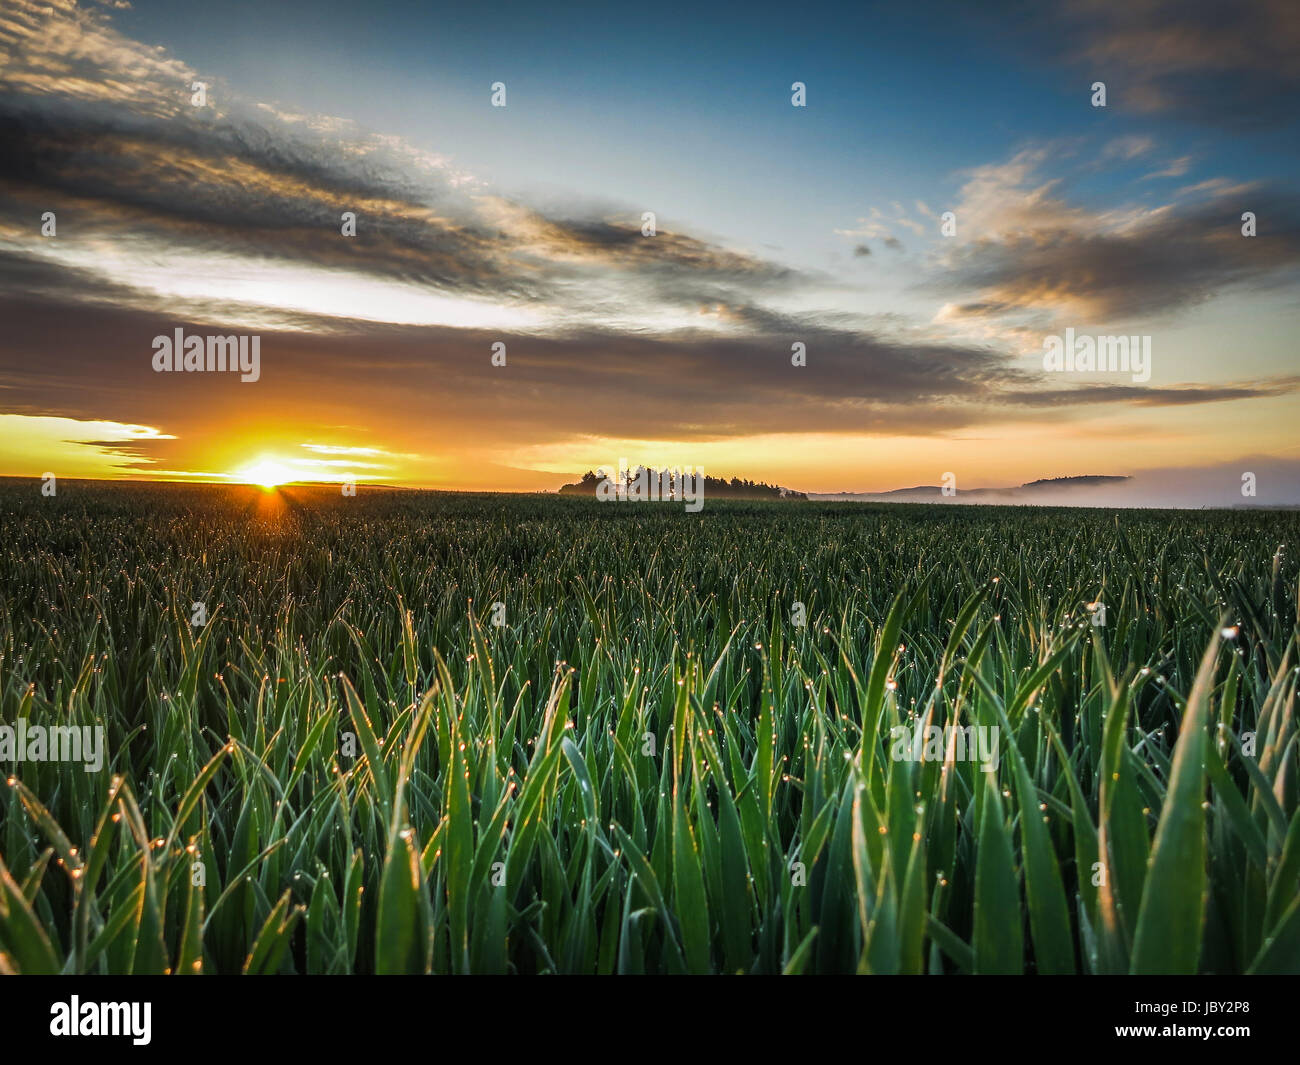 Ein Sonnenaufgang früh morgens im Frühling, das junge Getreide ist mit Tau benetzt und zwischen den Wolken schiebt sich langsam die Sonne durch. Stock Photo